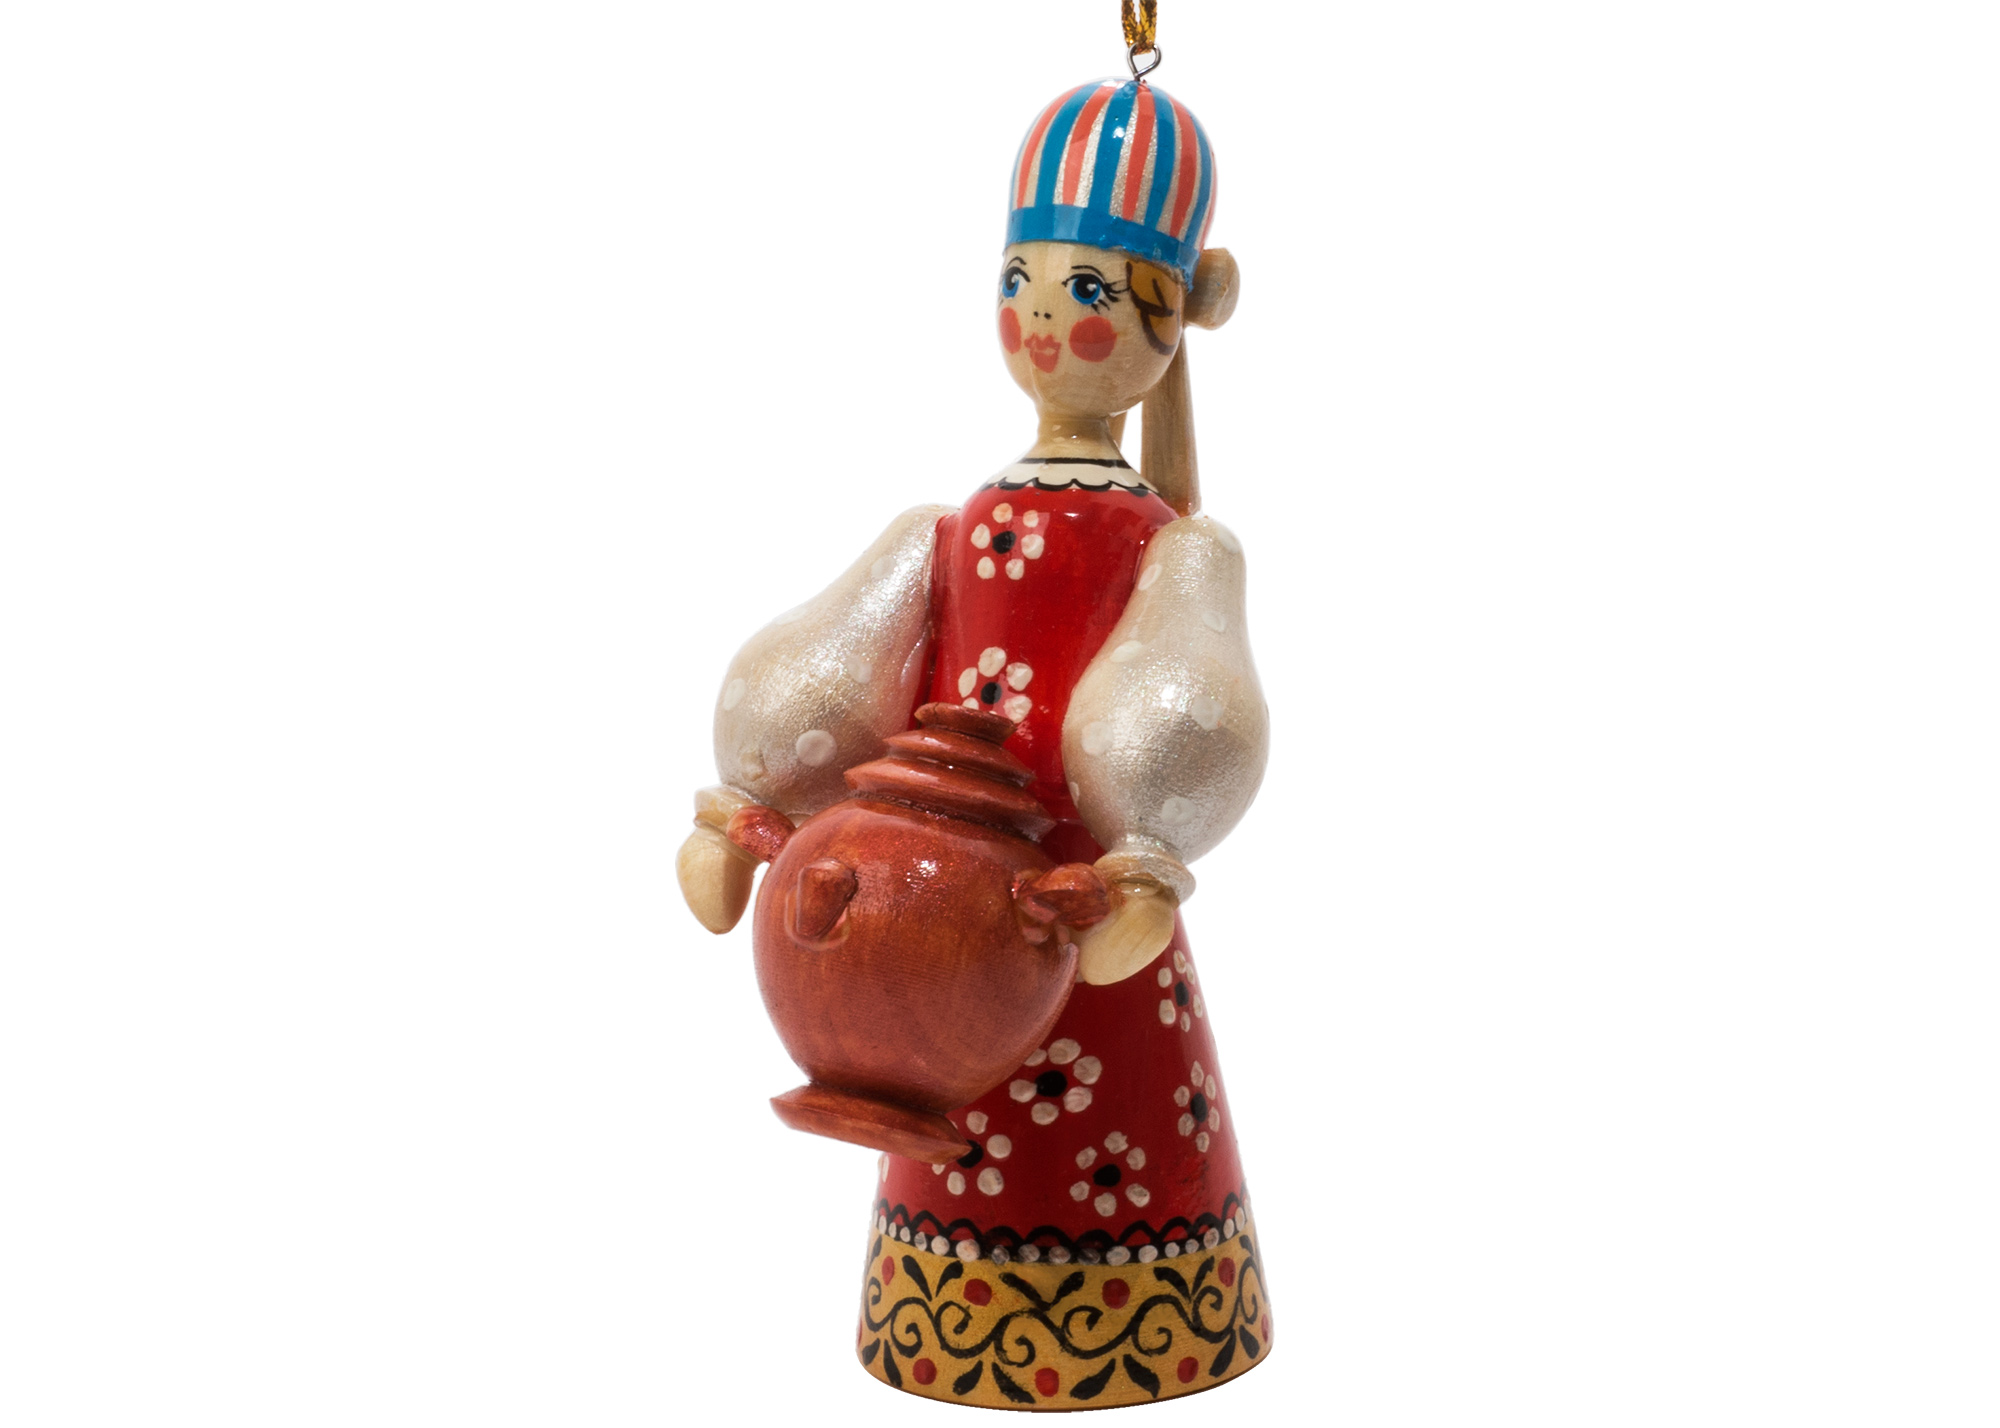 Buy Russian Folk Samovar Lady Ornament 4.25" at GoldenCockerel.com